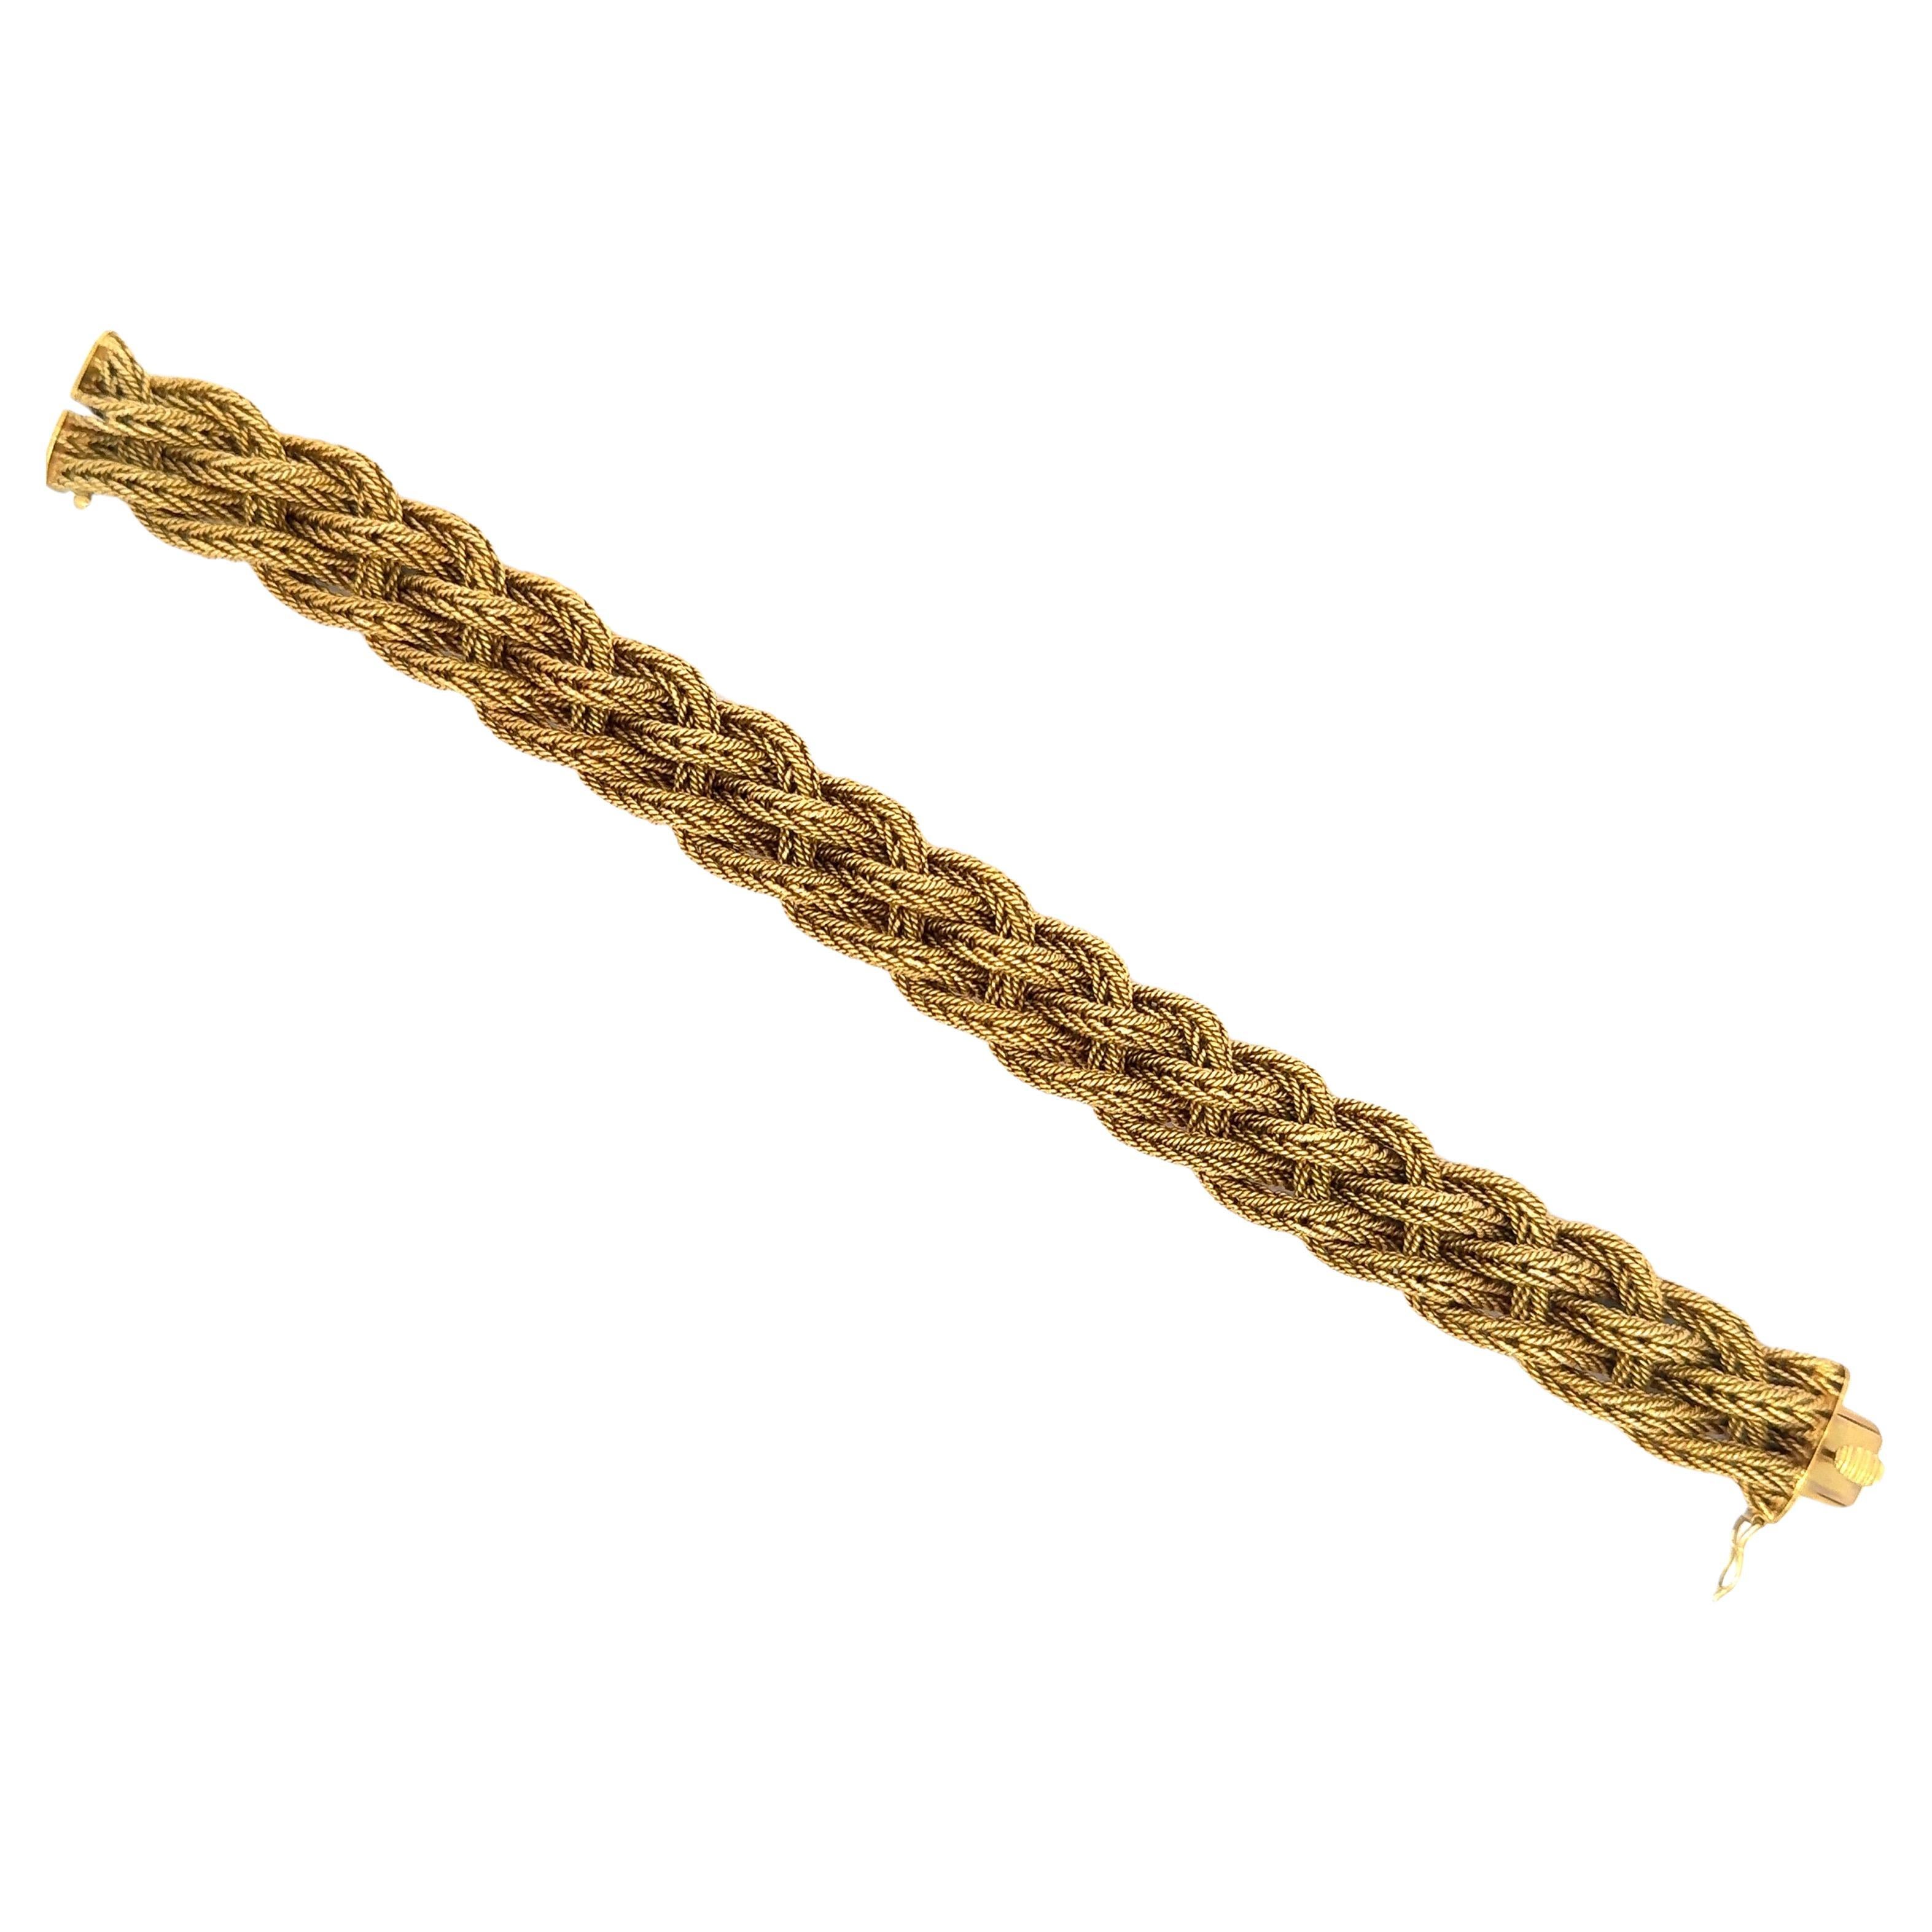 Armband aus 18 Karat Gelbgold mit geflochtenem Motiv und einem Gewicht von 77,7 Gramm.
Nett und schwer!

